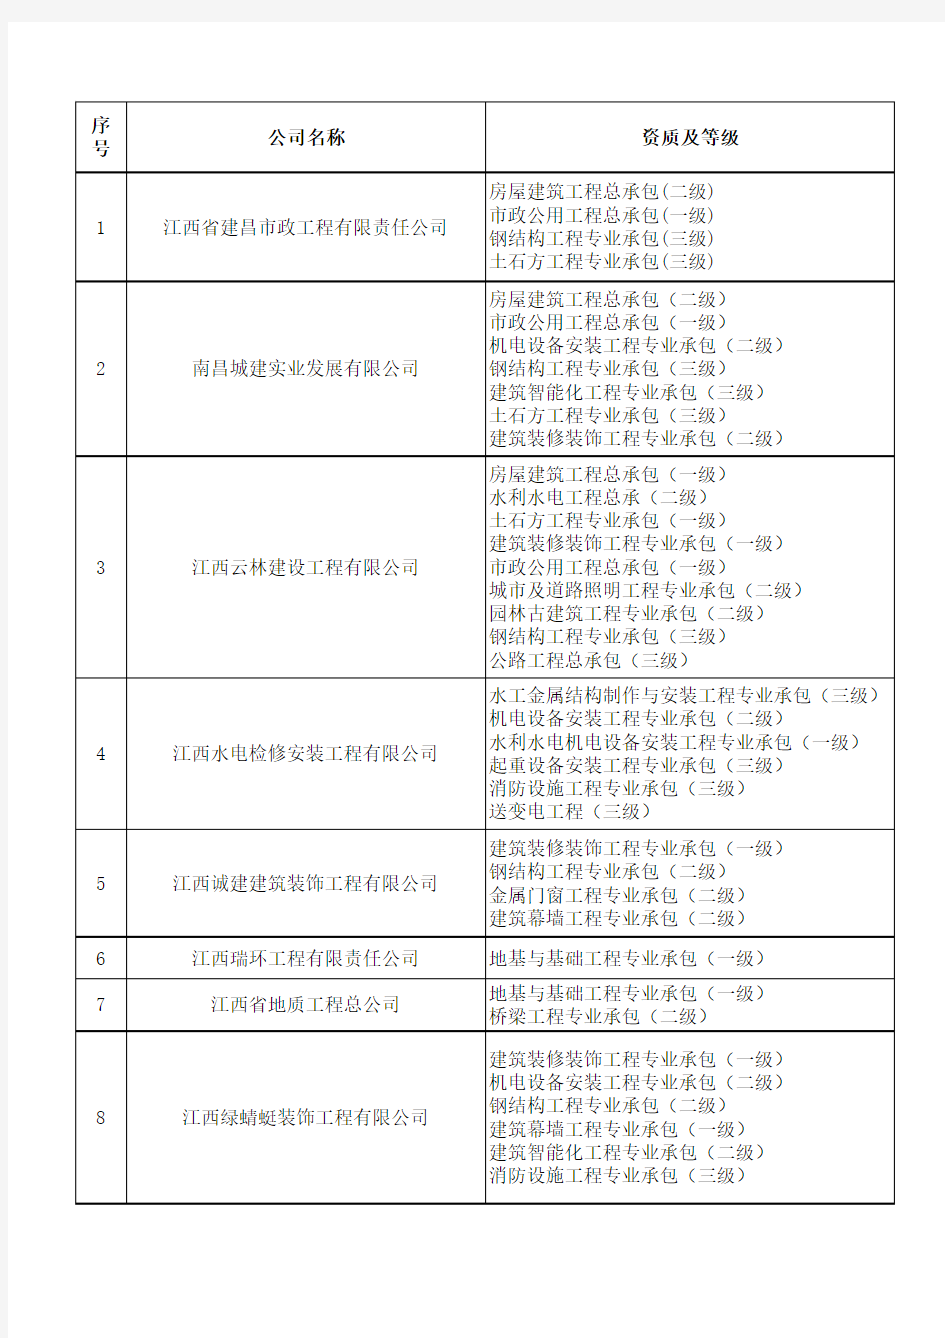 江西省一级施工企业资质表(外省进赣未统计)